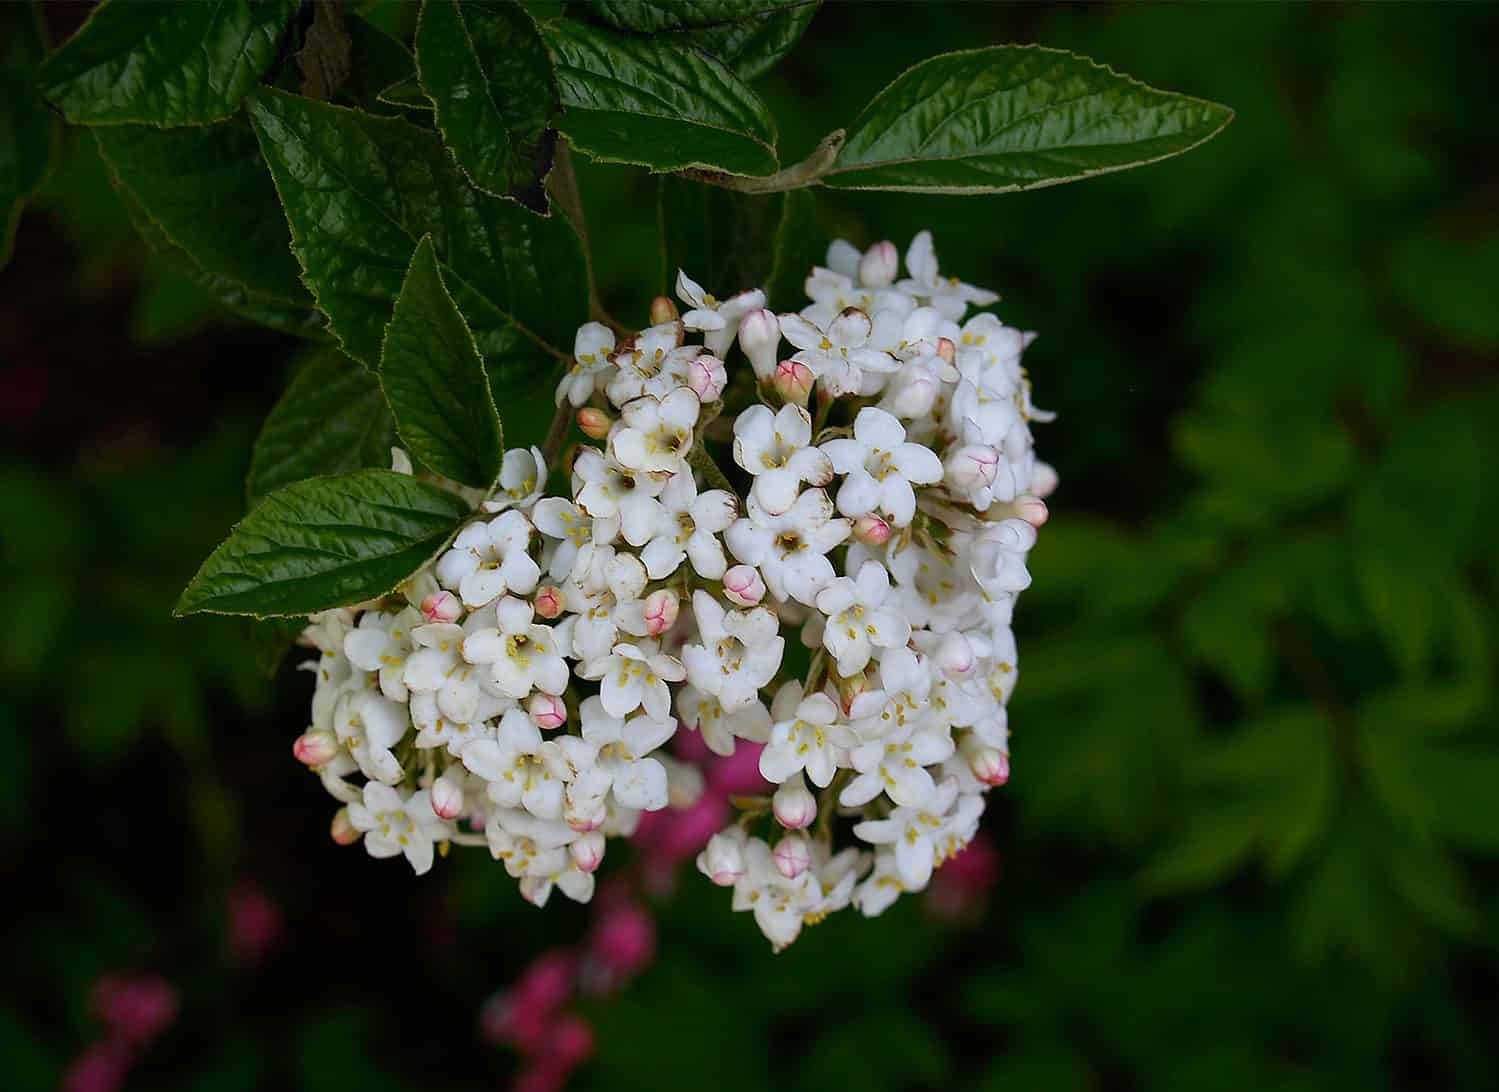 burkwood viburnum flower